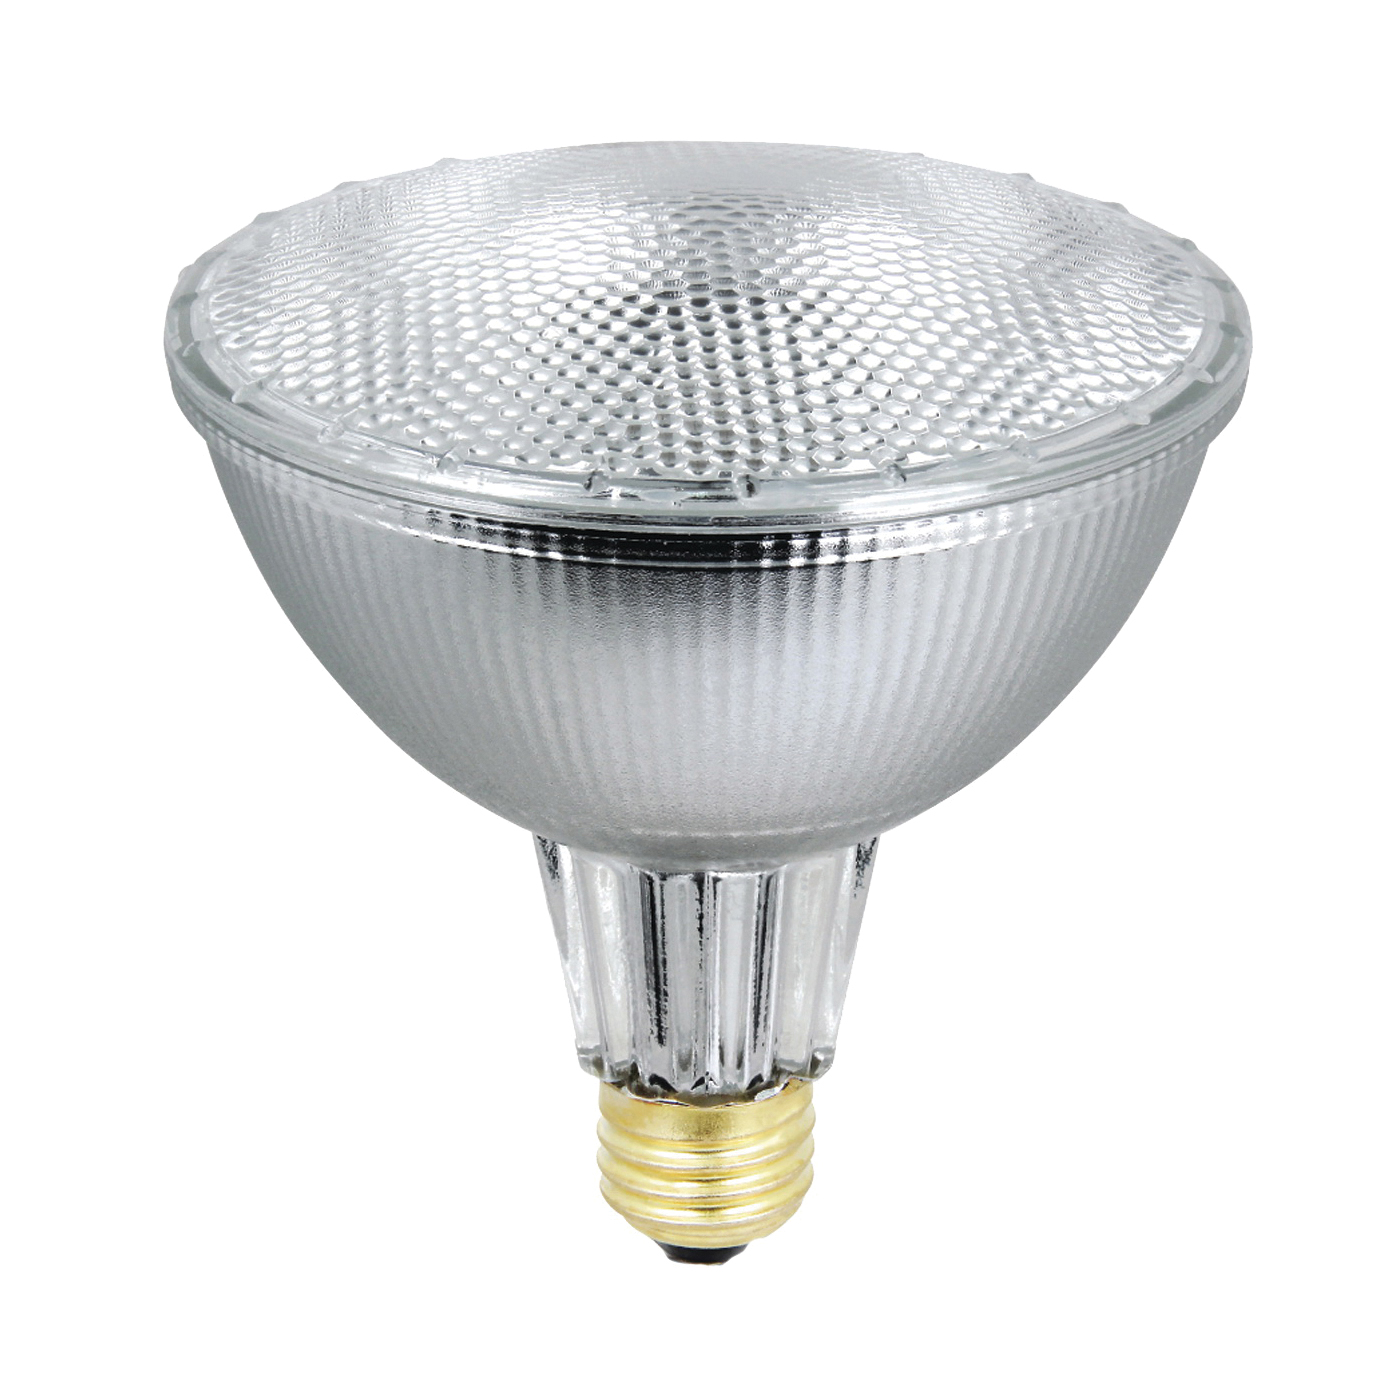 55PAR38/QFL/ES/2 Halogen Bulb, 56 W, Medium E26 Lamp Base, PAR38 Lamp, Soft White Light, 980 Lumens